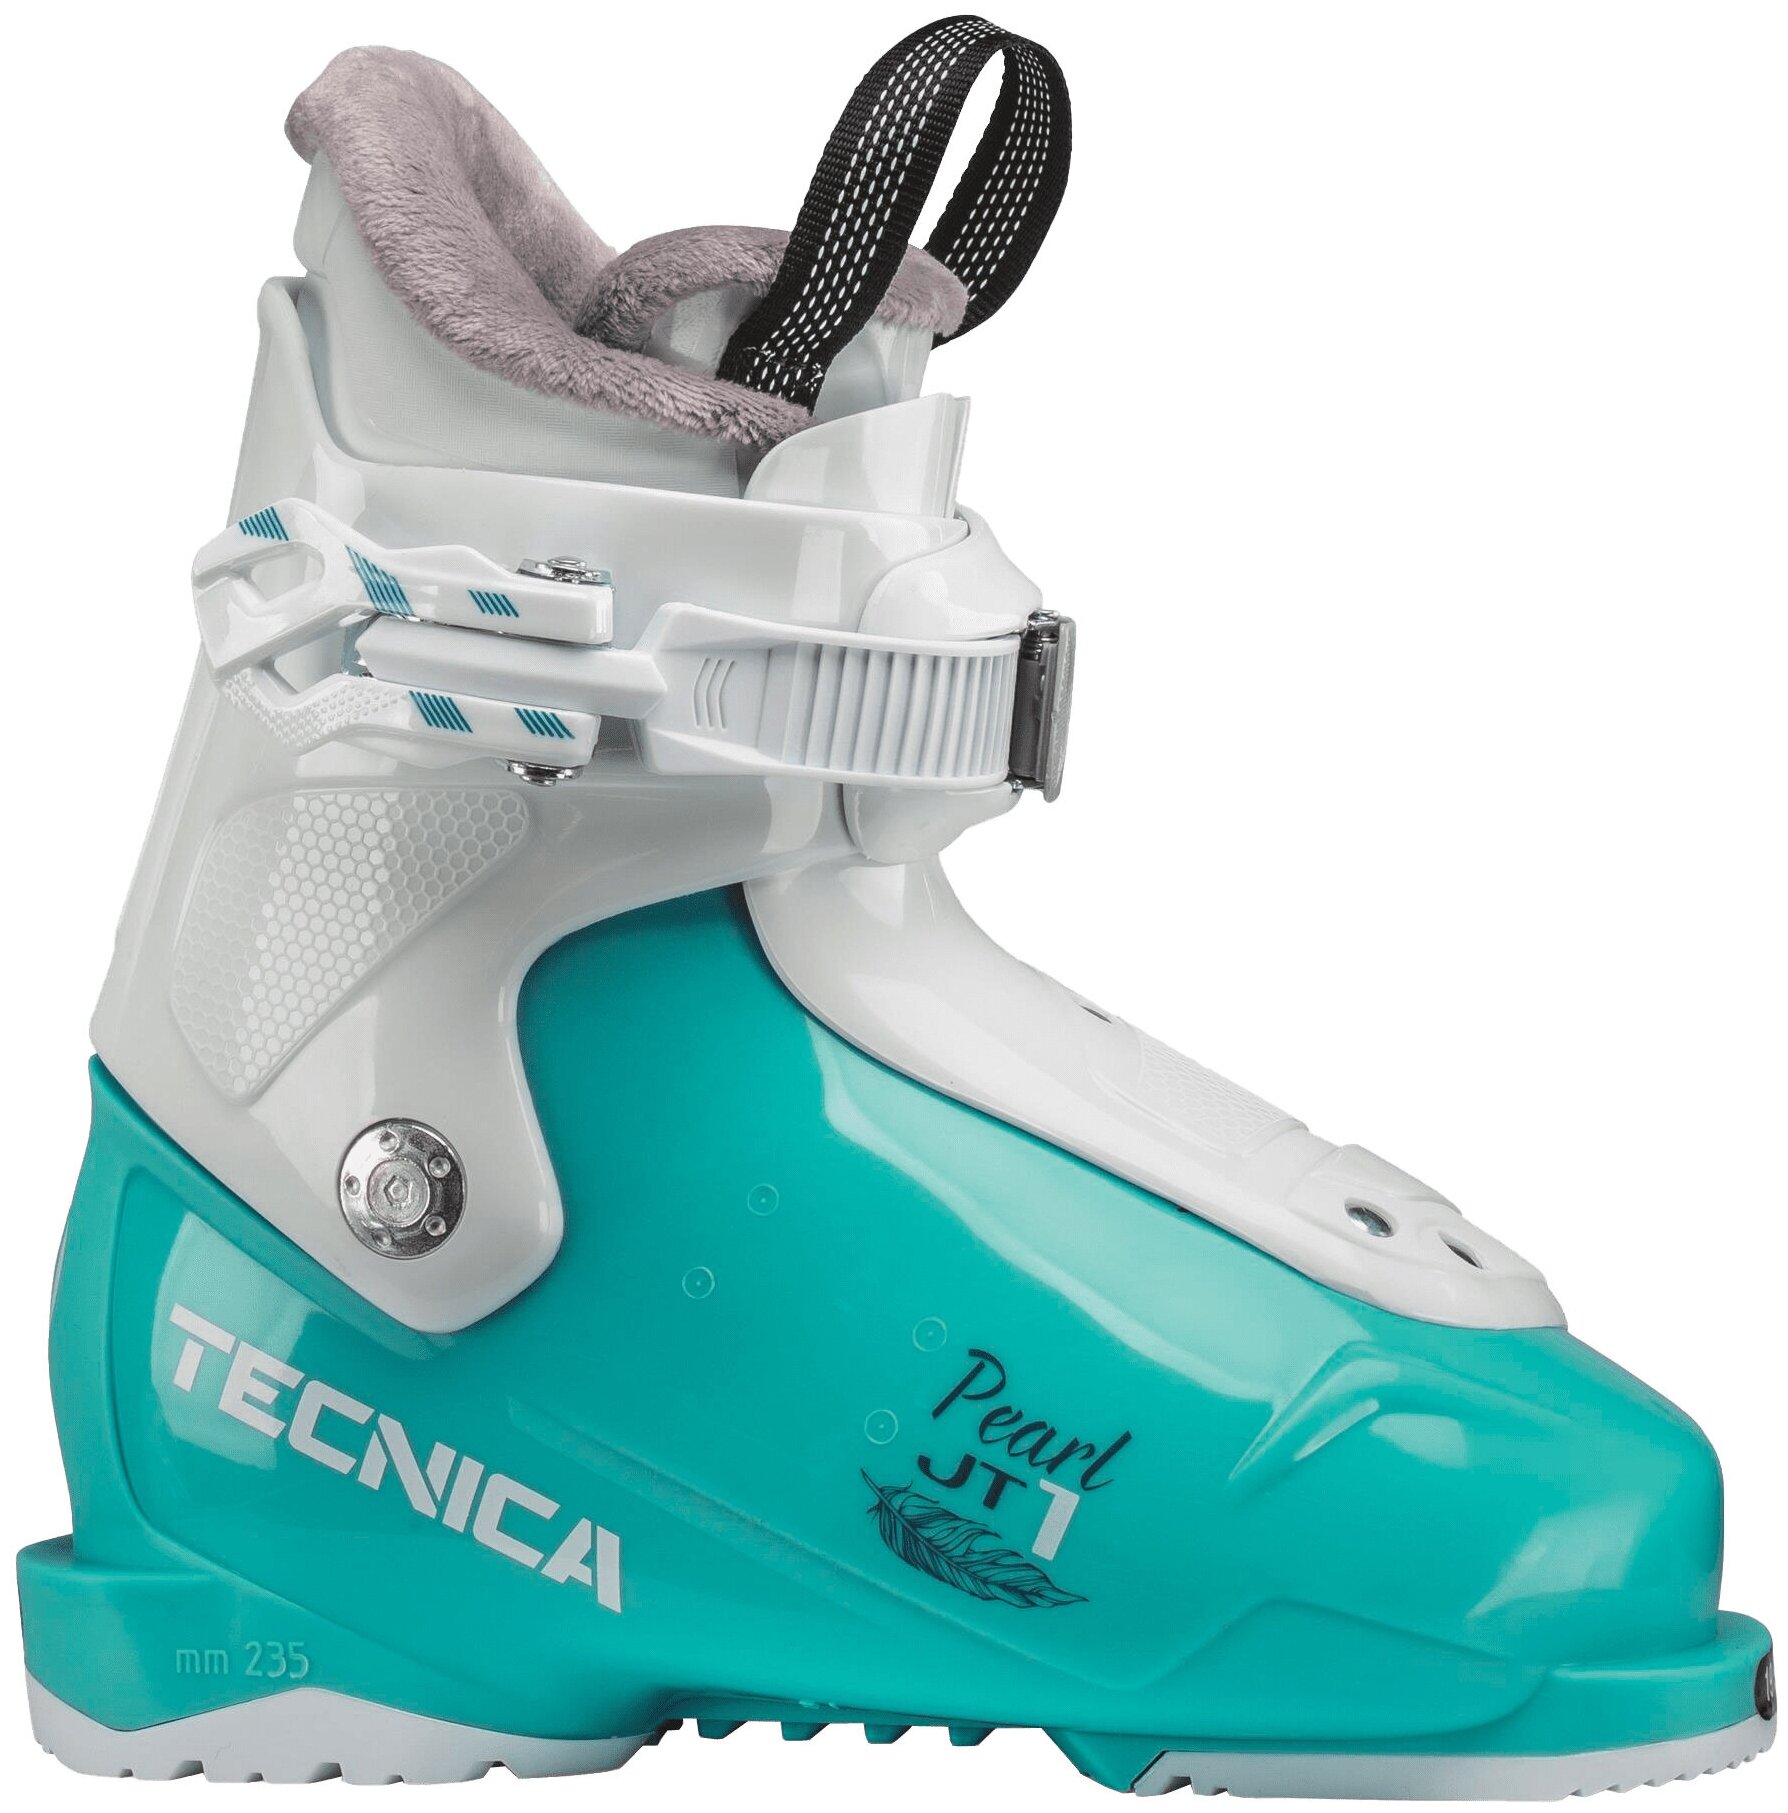 Детские горнолыжные ботинки Tecnica JT 1 Pearl — купить в интернет-магазинепо низкой цене на Яндекс Маркете